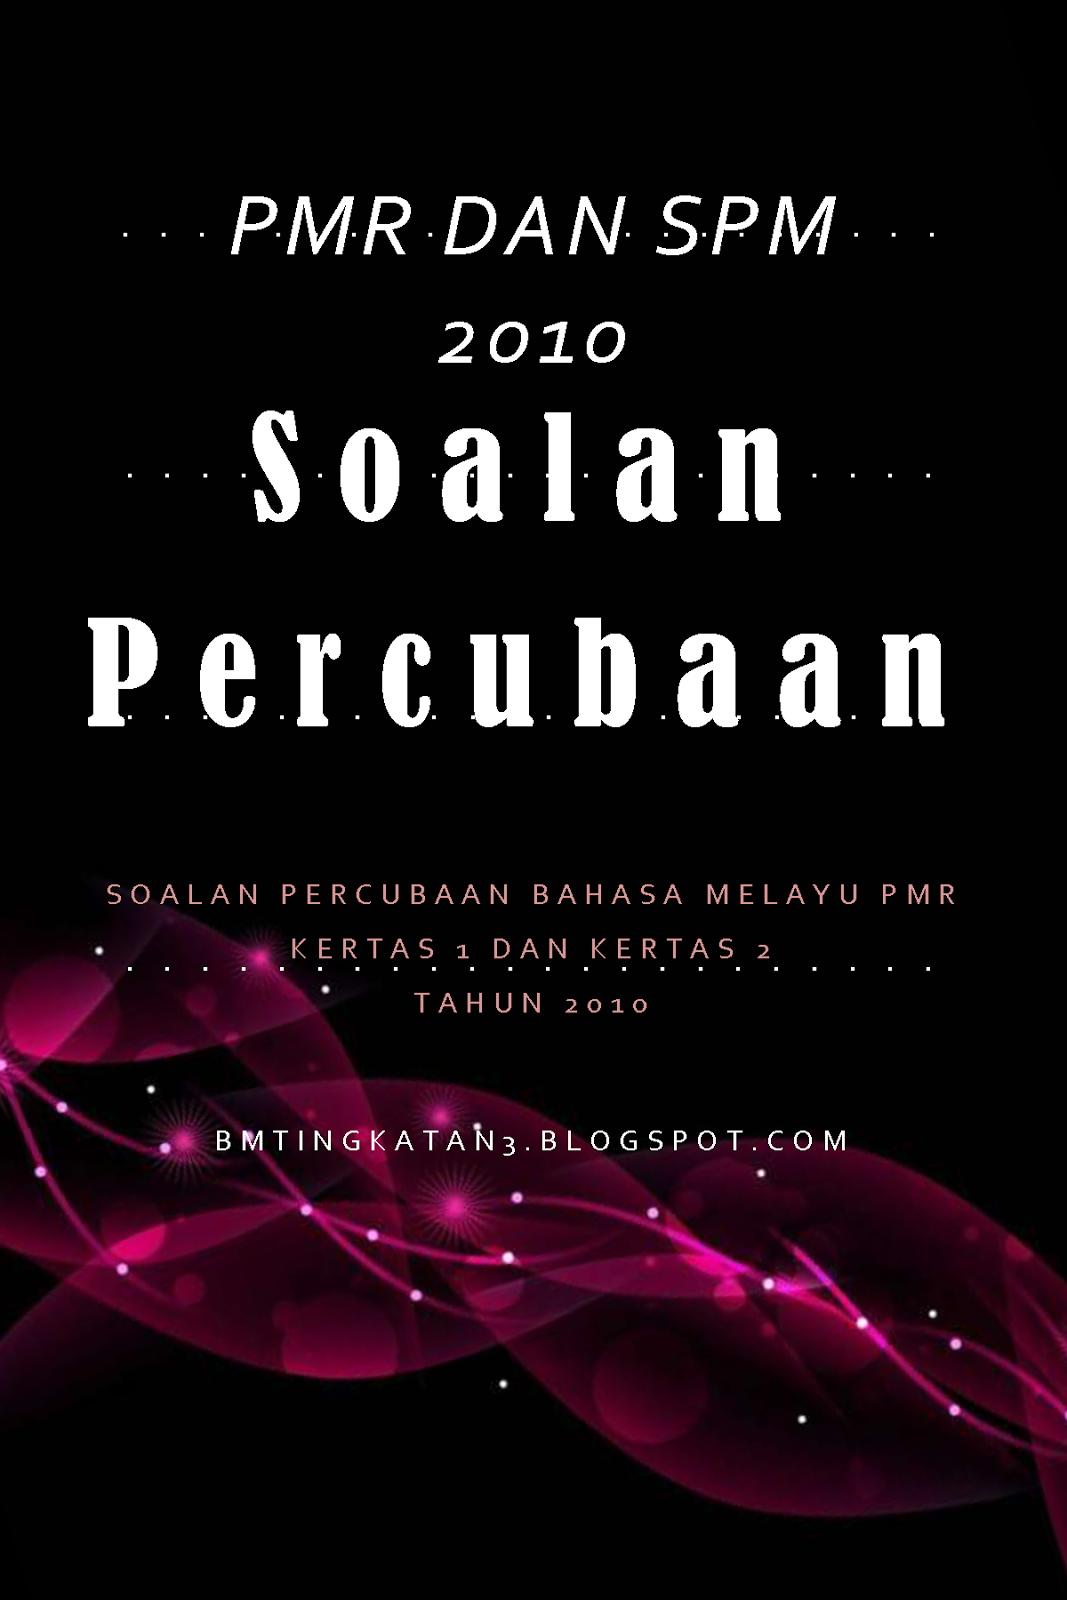 Soalan-soalan Percubaan Bahasa Melayu PMR dan SPM Tahun 